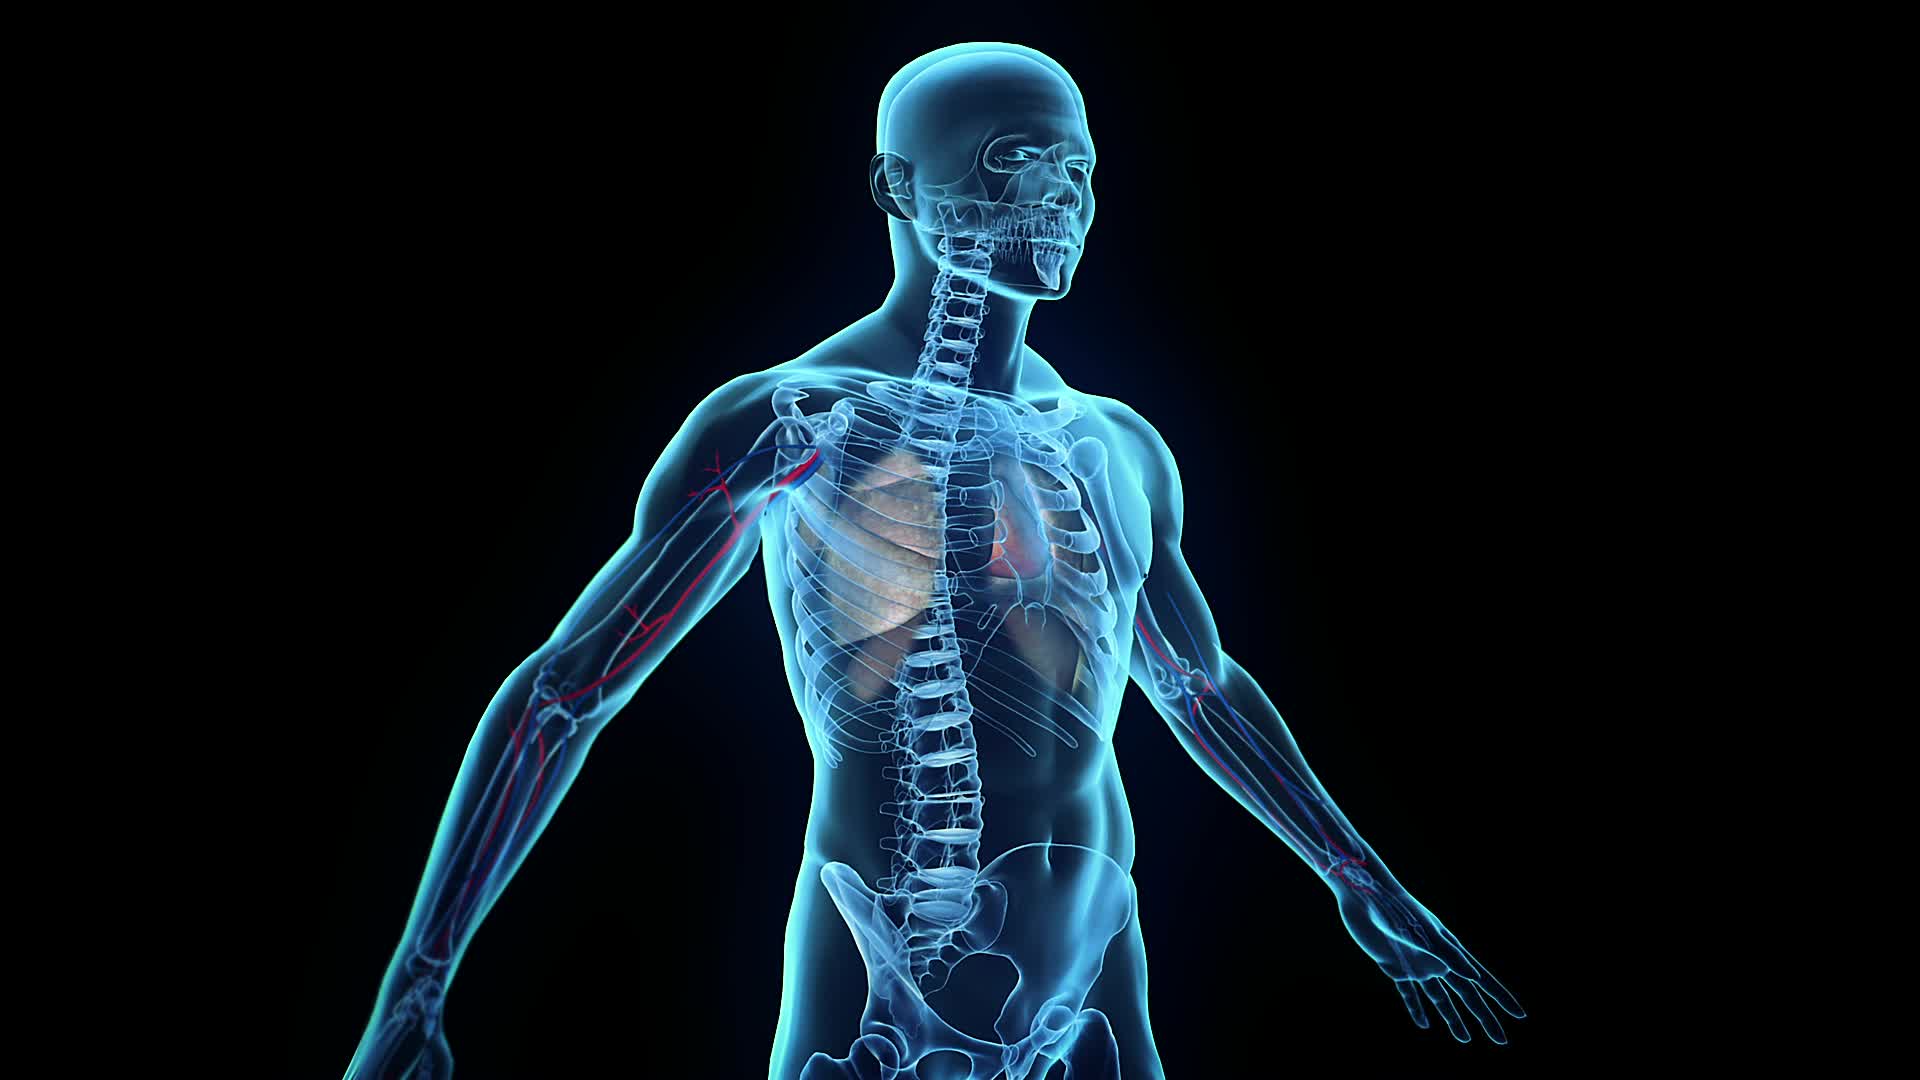 تصویر بسیار باکیفیت 3D از رادیولوژی کامل بدن در انسان